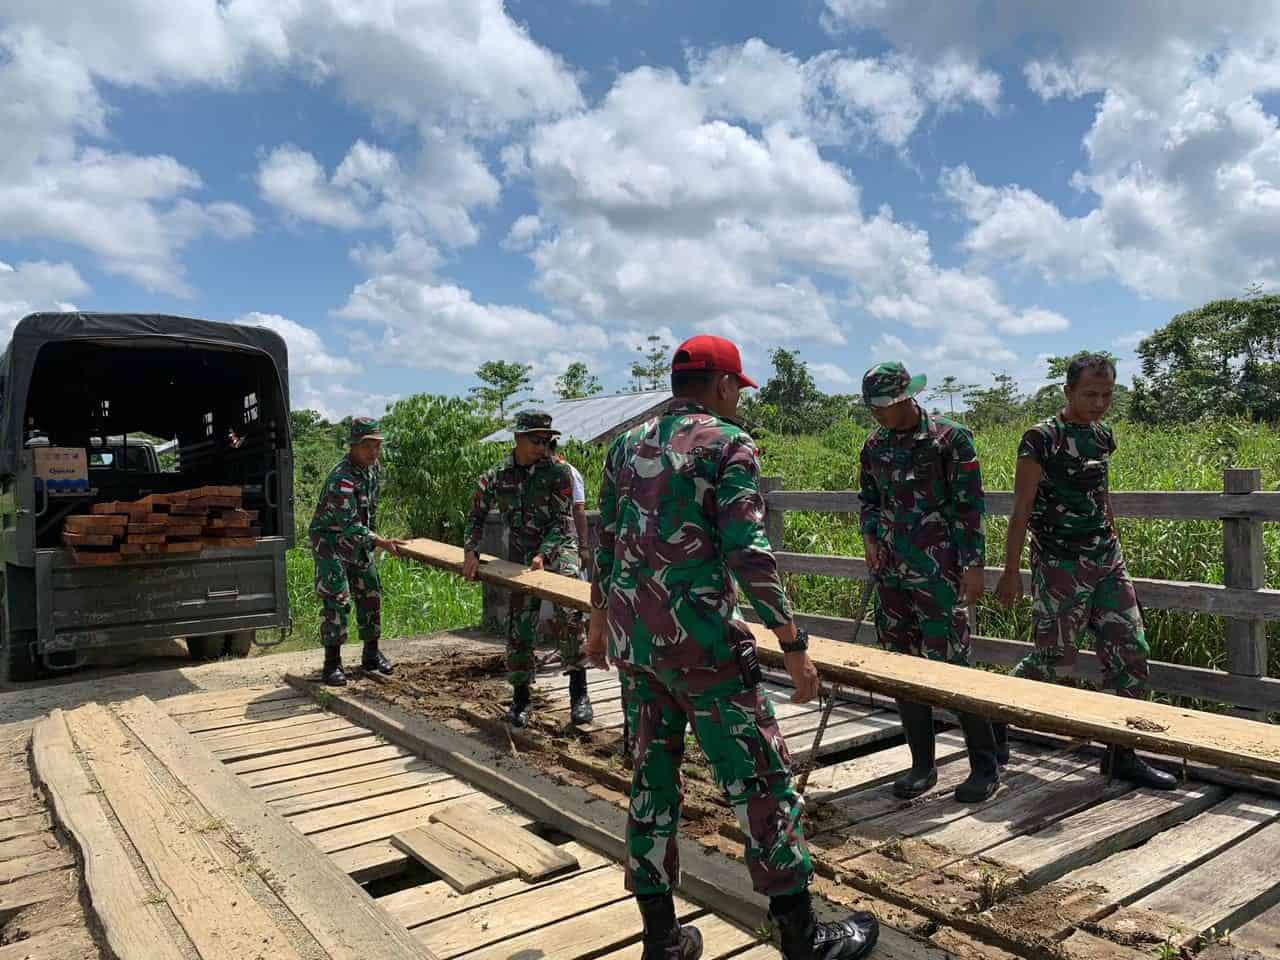 Rusak dan Berlubang, Satgas Yonmek 403 Bersama Masyarakat Gotong Royong Perbaiki Jembatan Kayu di Papua